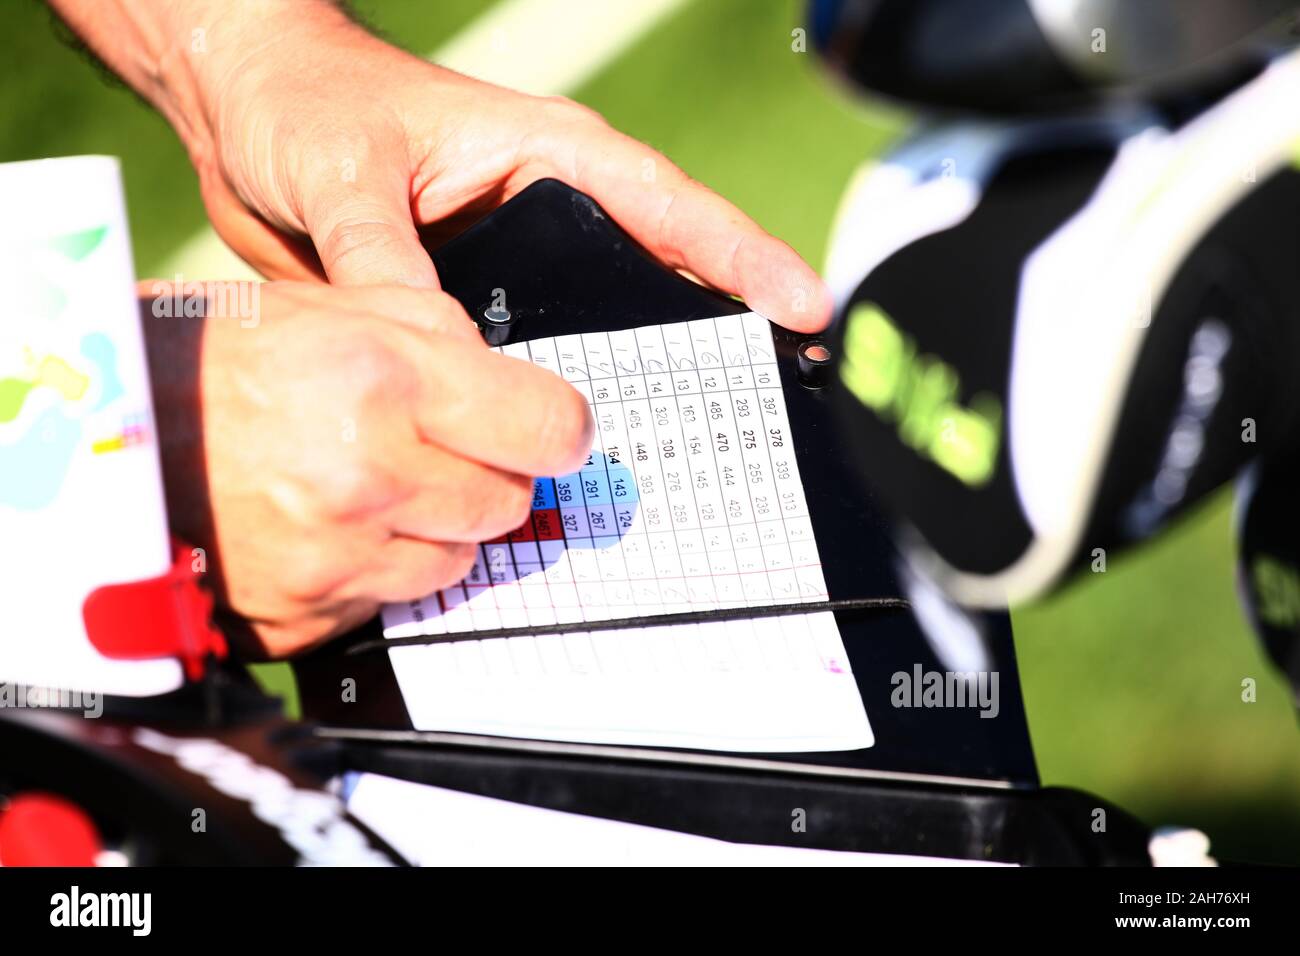 Il Golfer mantenendo i punteggi nel foglio di punteggio con le mani Foto Stock